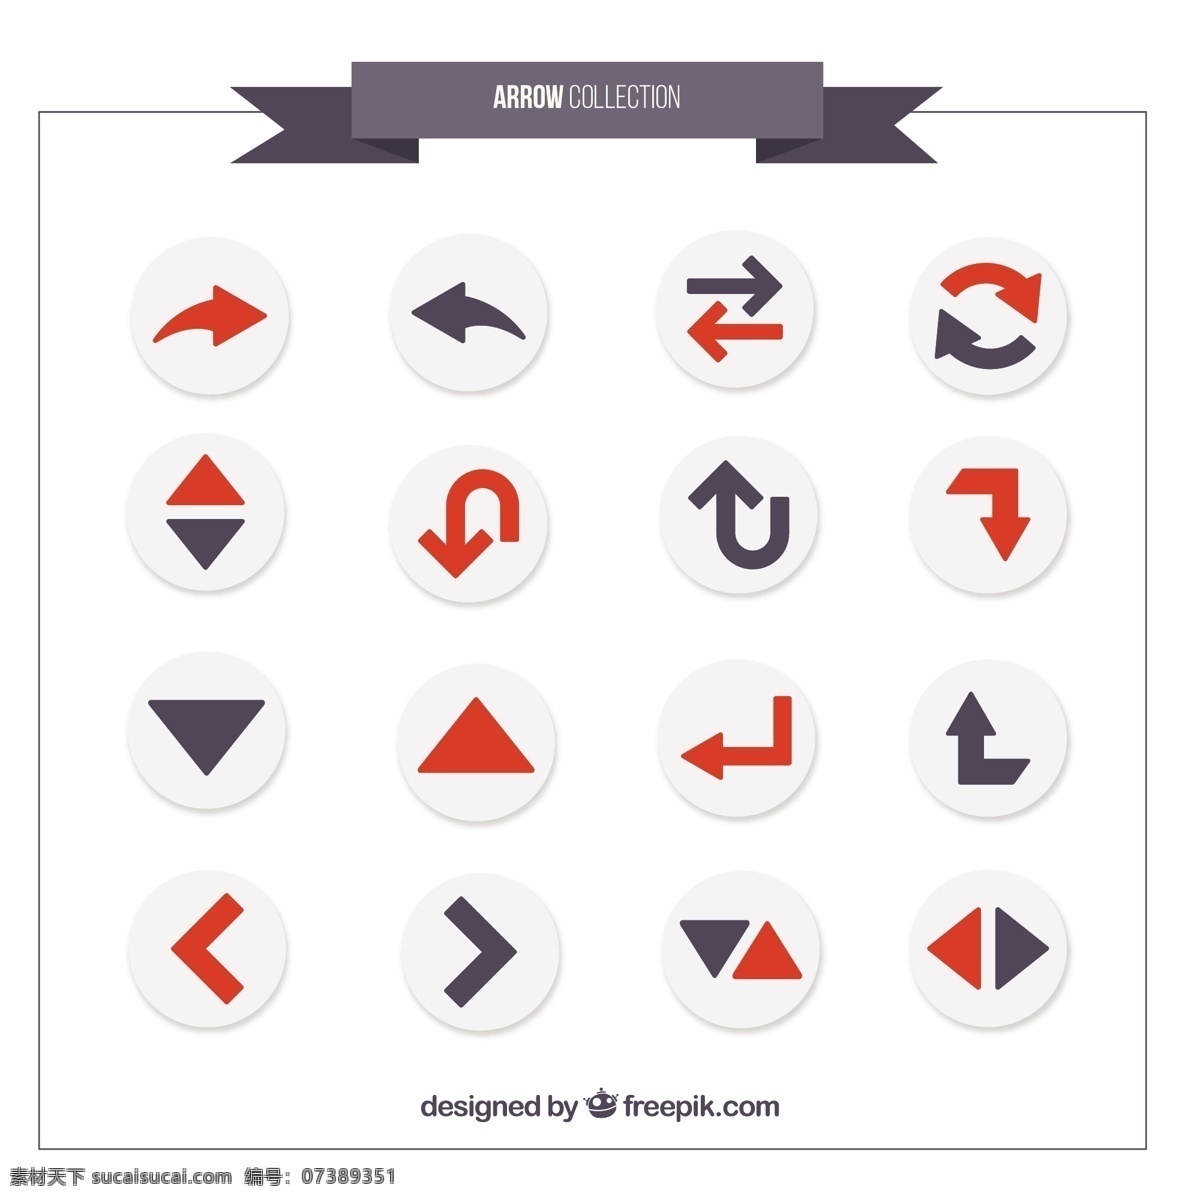 灰色 红色 箭头 各种 颜色 图表 红 平 图形 按钮 平面设计 要素 信息图表元素 方向 指针位置 品种 标记